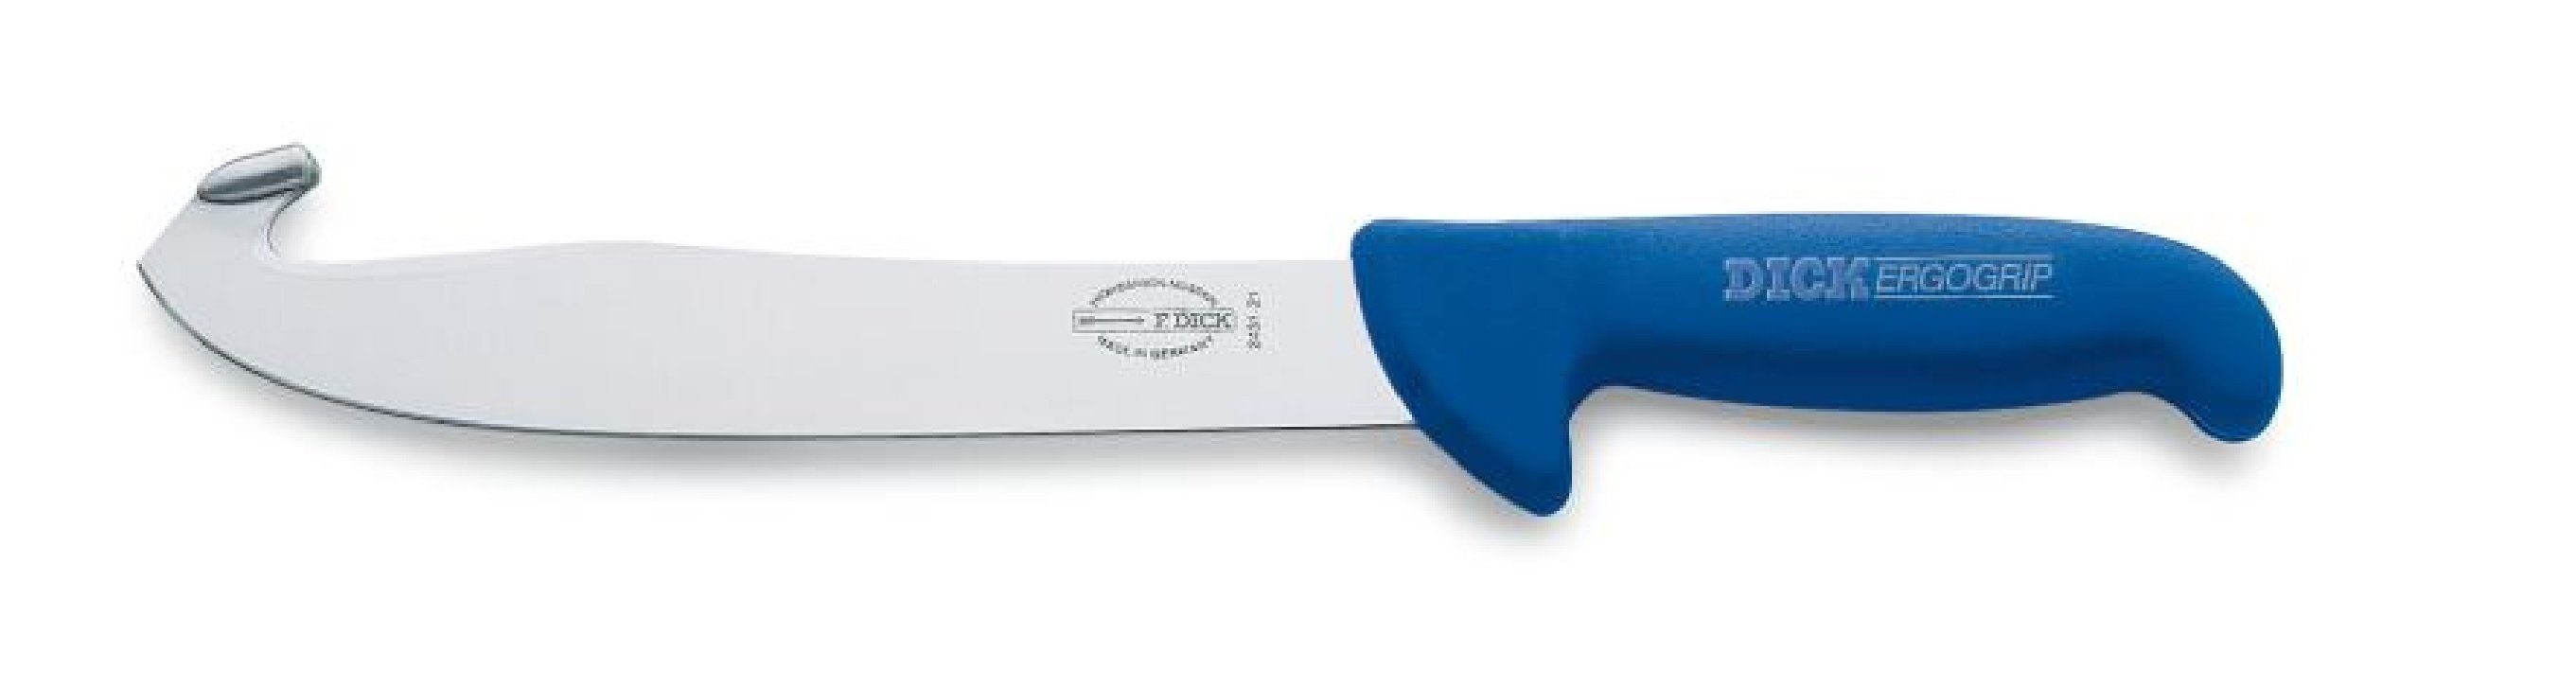 Messer Fleischmesser Schneidhaken Spezialmesser mit 21 Dick 8243121 cm Ergogrip Dick